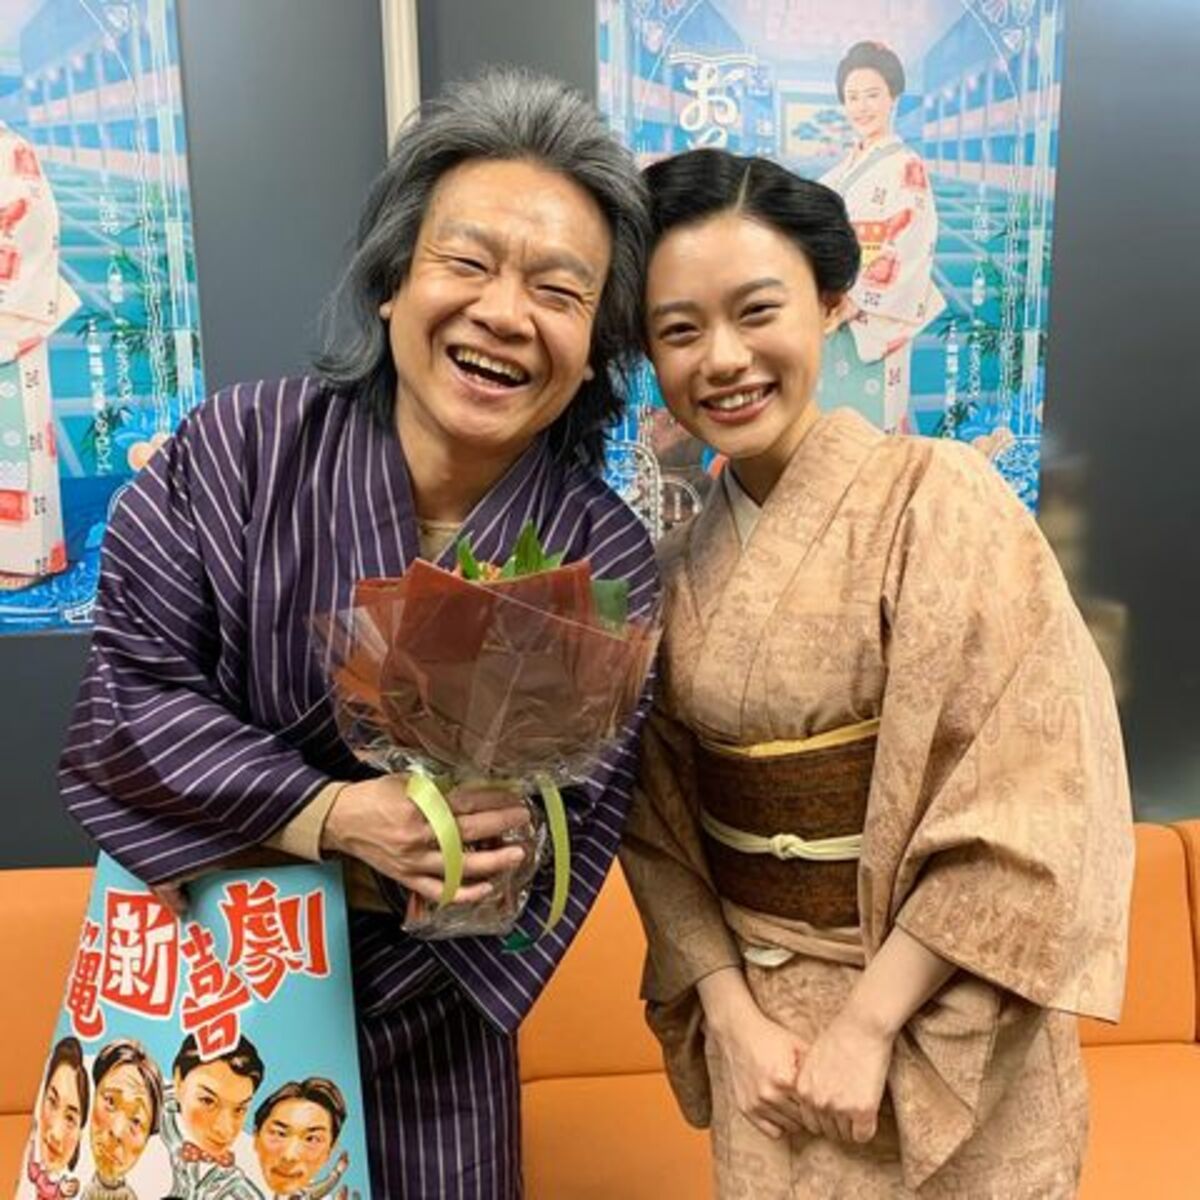 杉咲花 千さん 大好きだす のメッセージに反響 最高の笑顔 引き際カッコよかった の声 話題 Abema Times